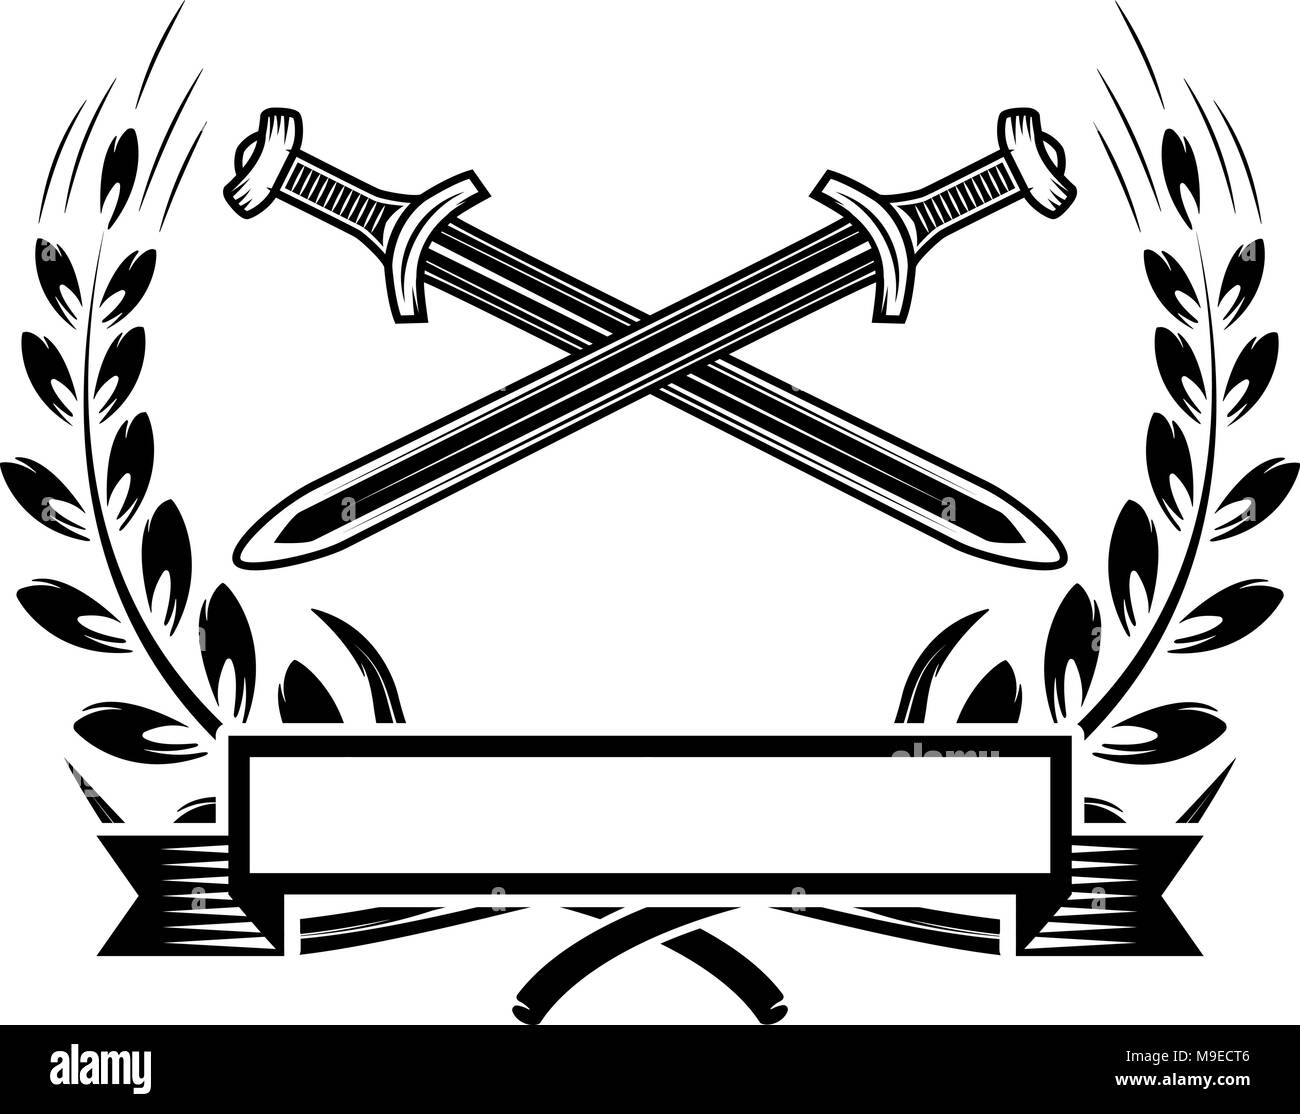 Emblem template with crossed swords. Design element for logo, label, emblem, sign. Vector illustration Stock Vector